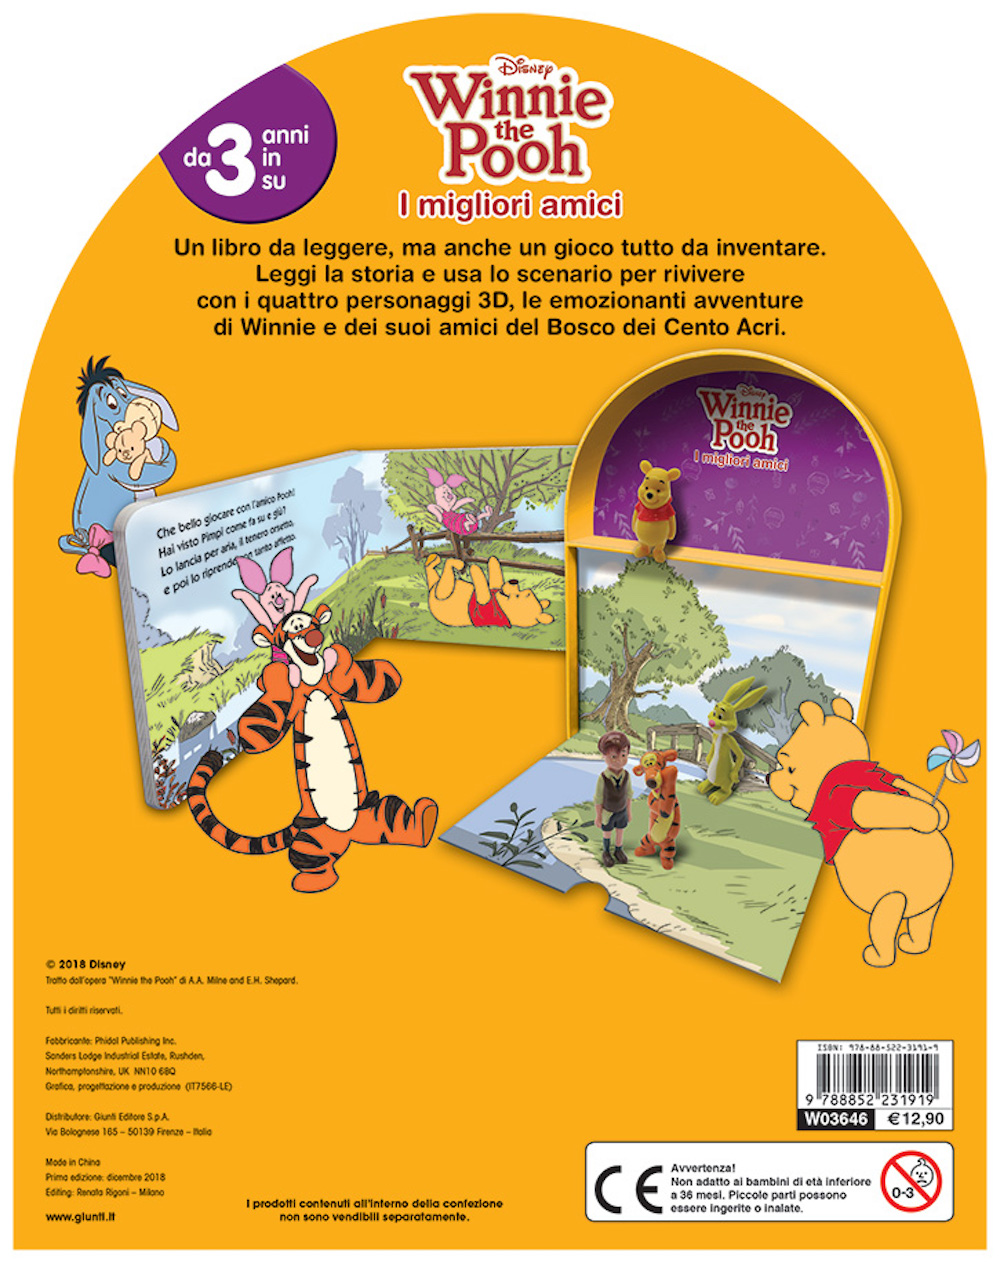 Winnie the Pooh - LibroGiocaKit - I migliori amici